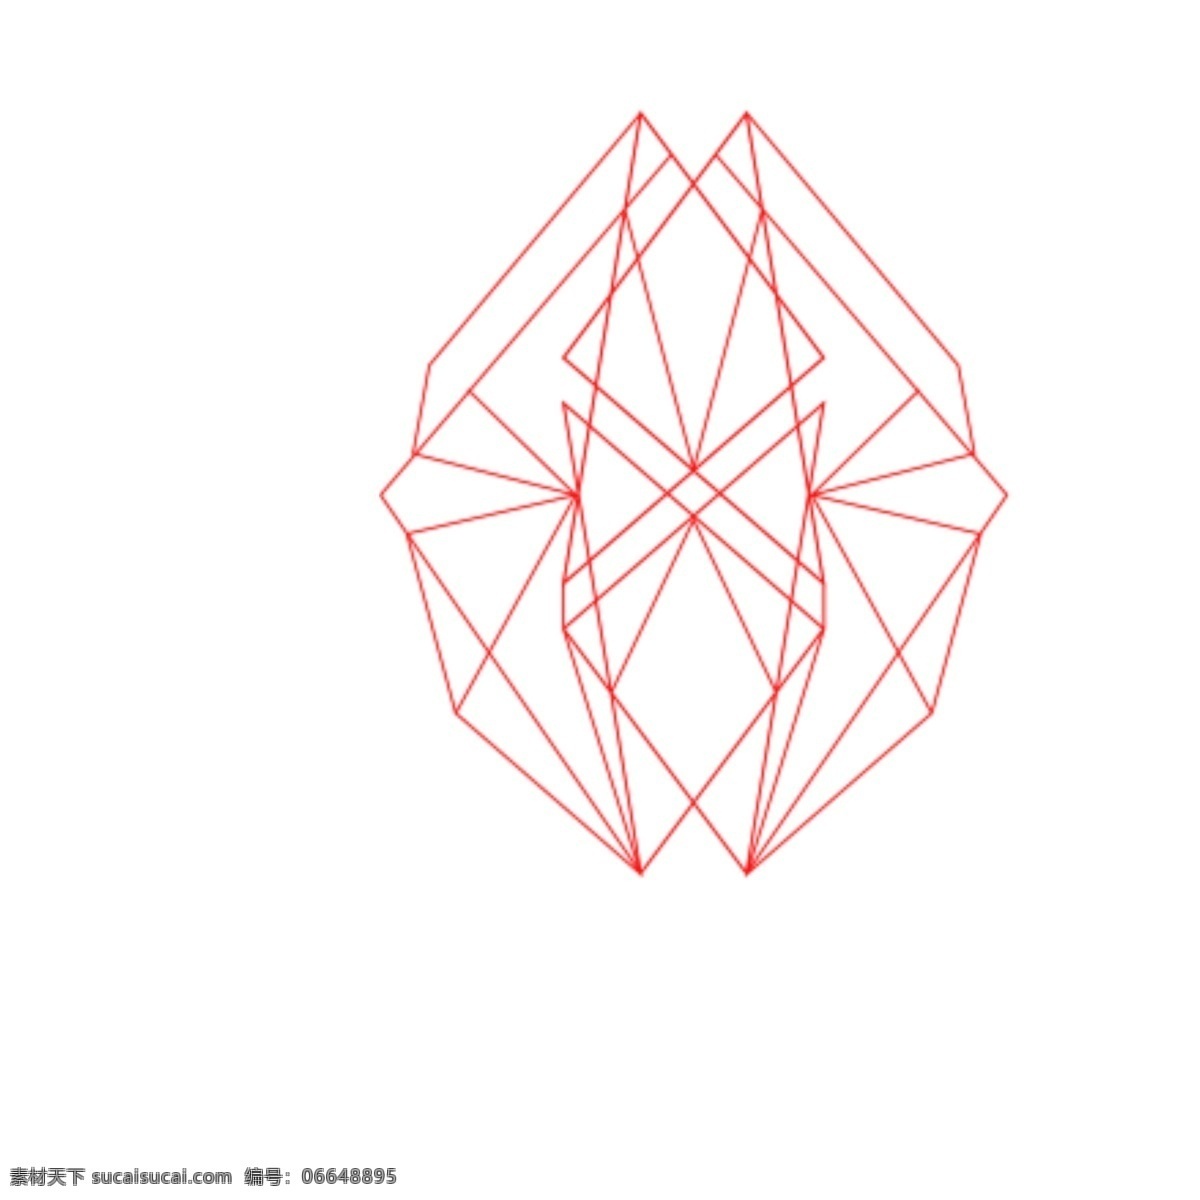 红色 线条 几何图形 连接 复杂 层次 抽象 凌乱创意 动感 空间感 装饰 个性 图形 底纹 立体